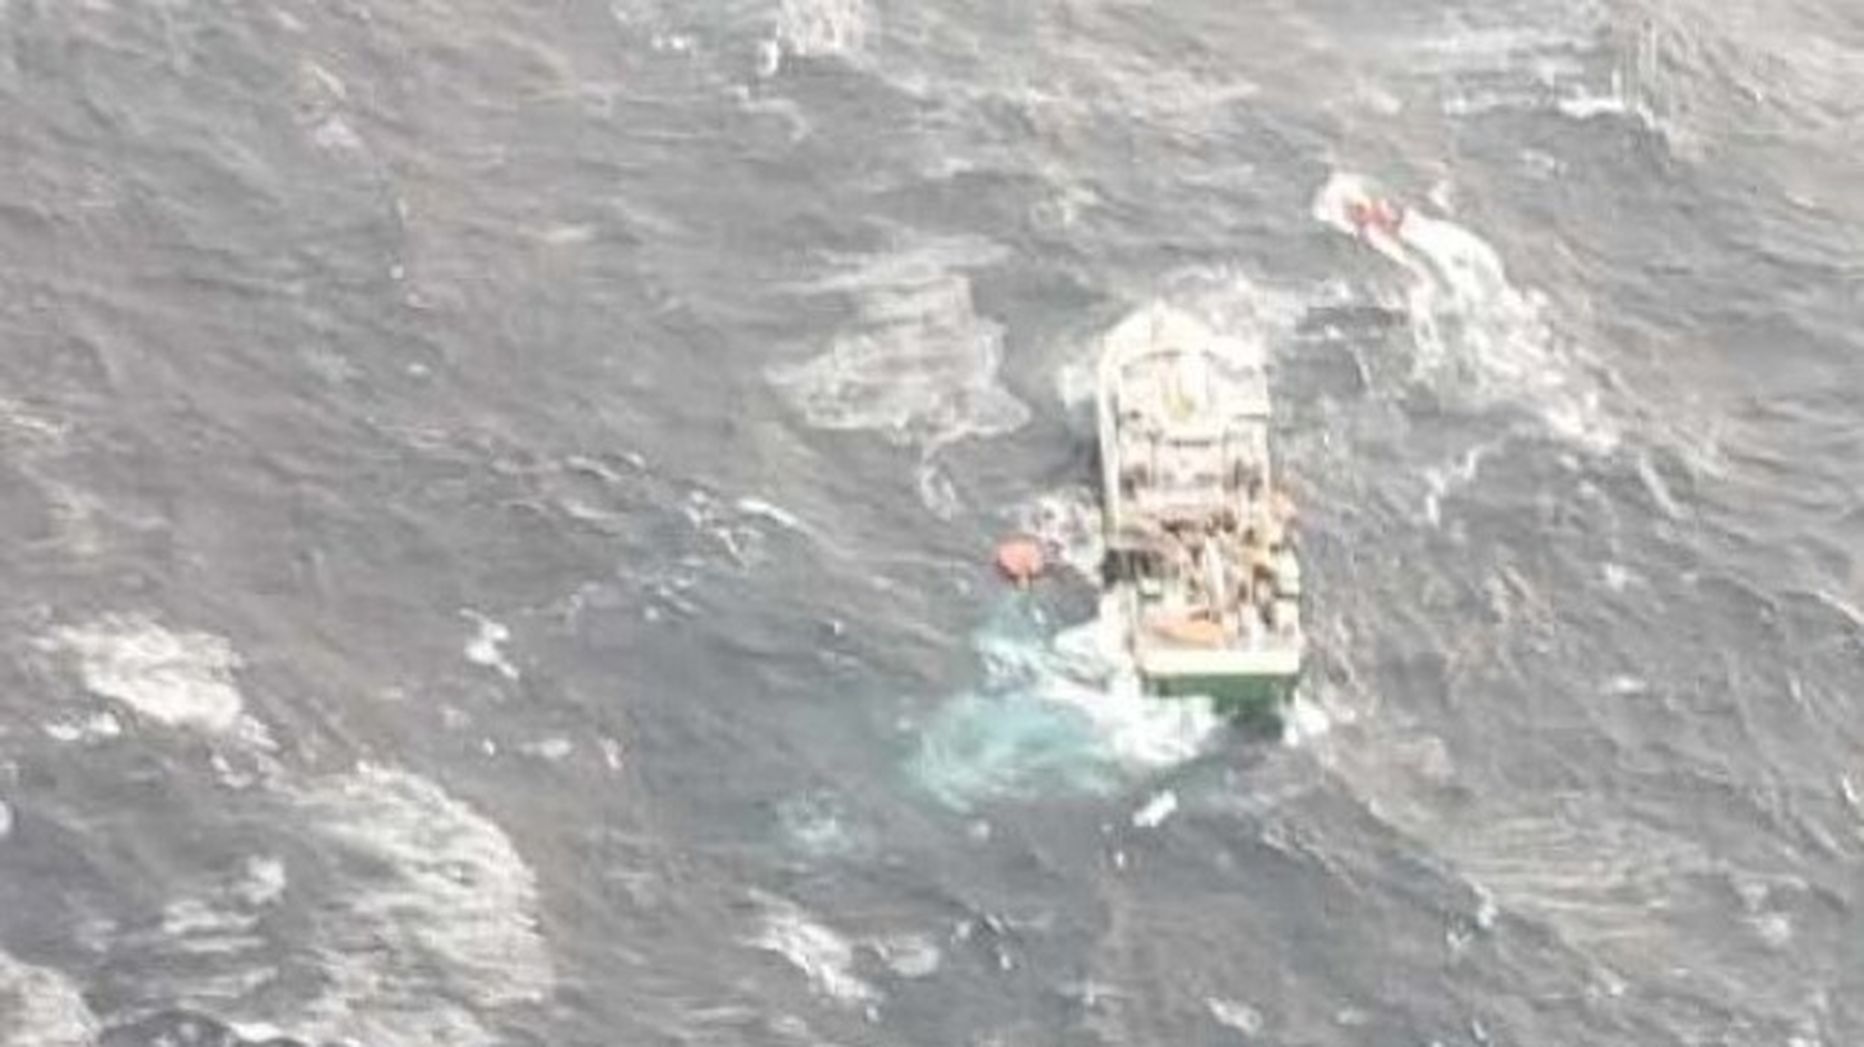 Päästeoperatsioon Nova Scotia ranniku lähistel, uppuvalt kalalaevalt päästeti 31 inimest.